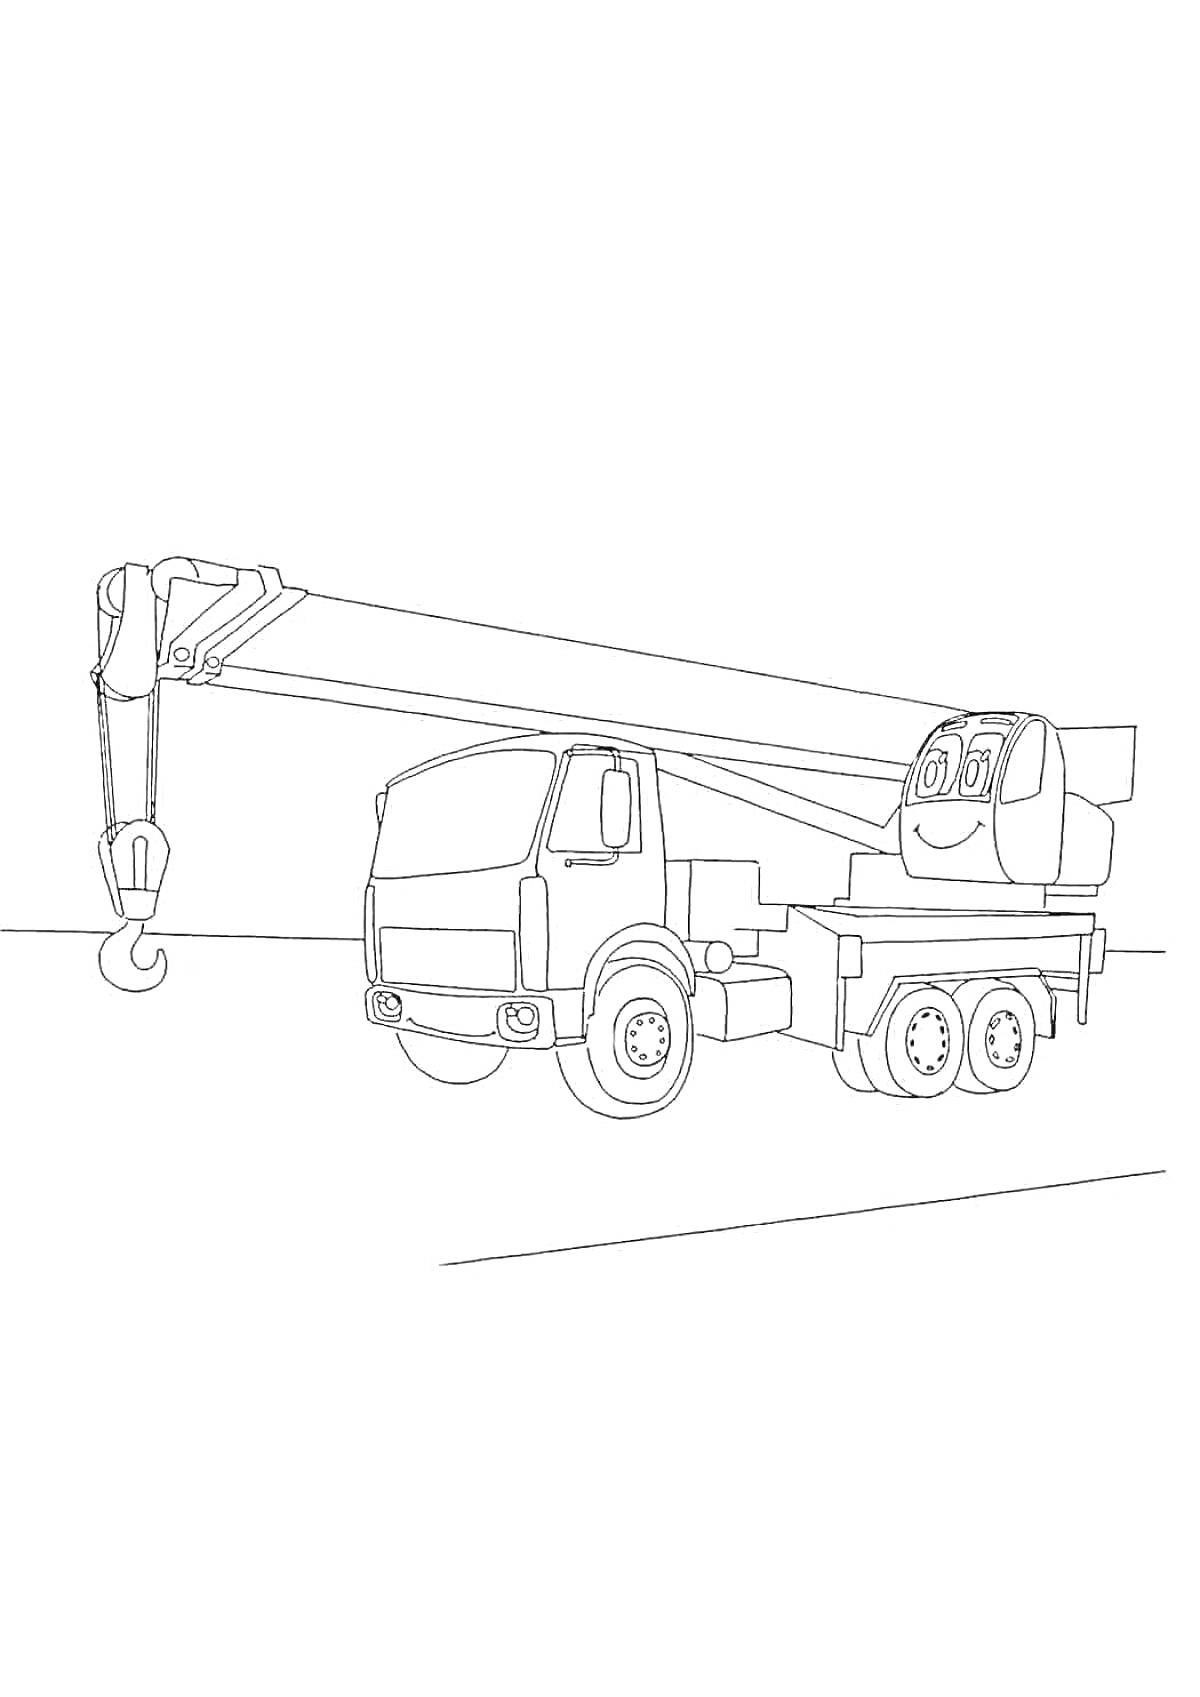 Раскраска Кран-грузовик с длинной стрелой и крюком, улыбающееся лицо на кабине.